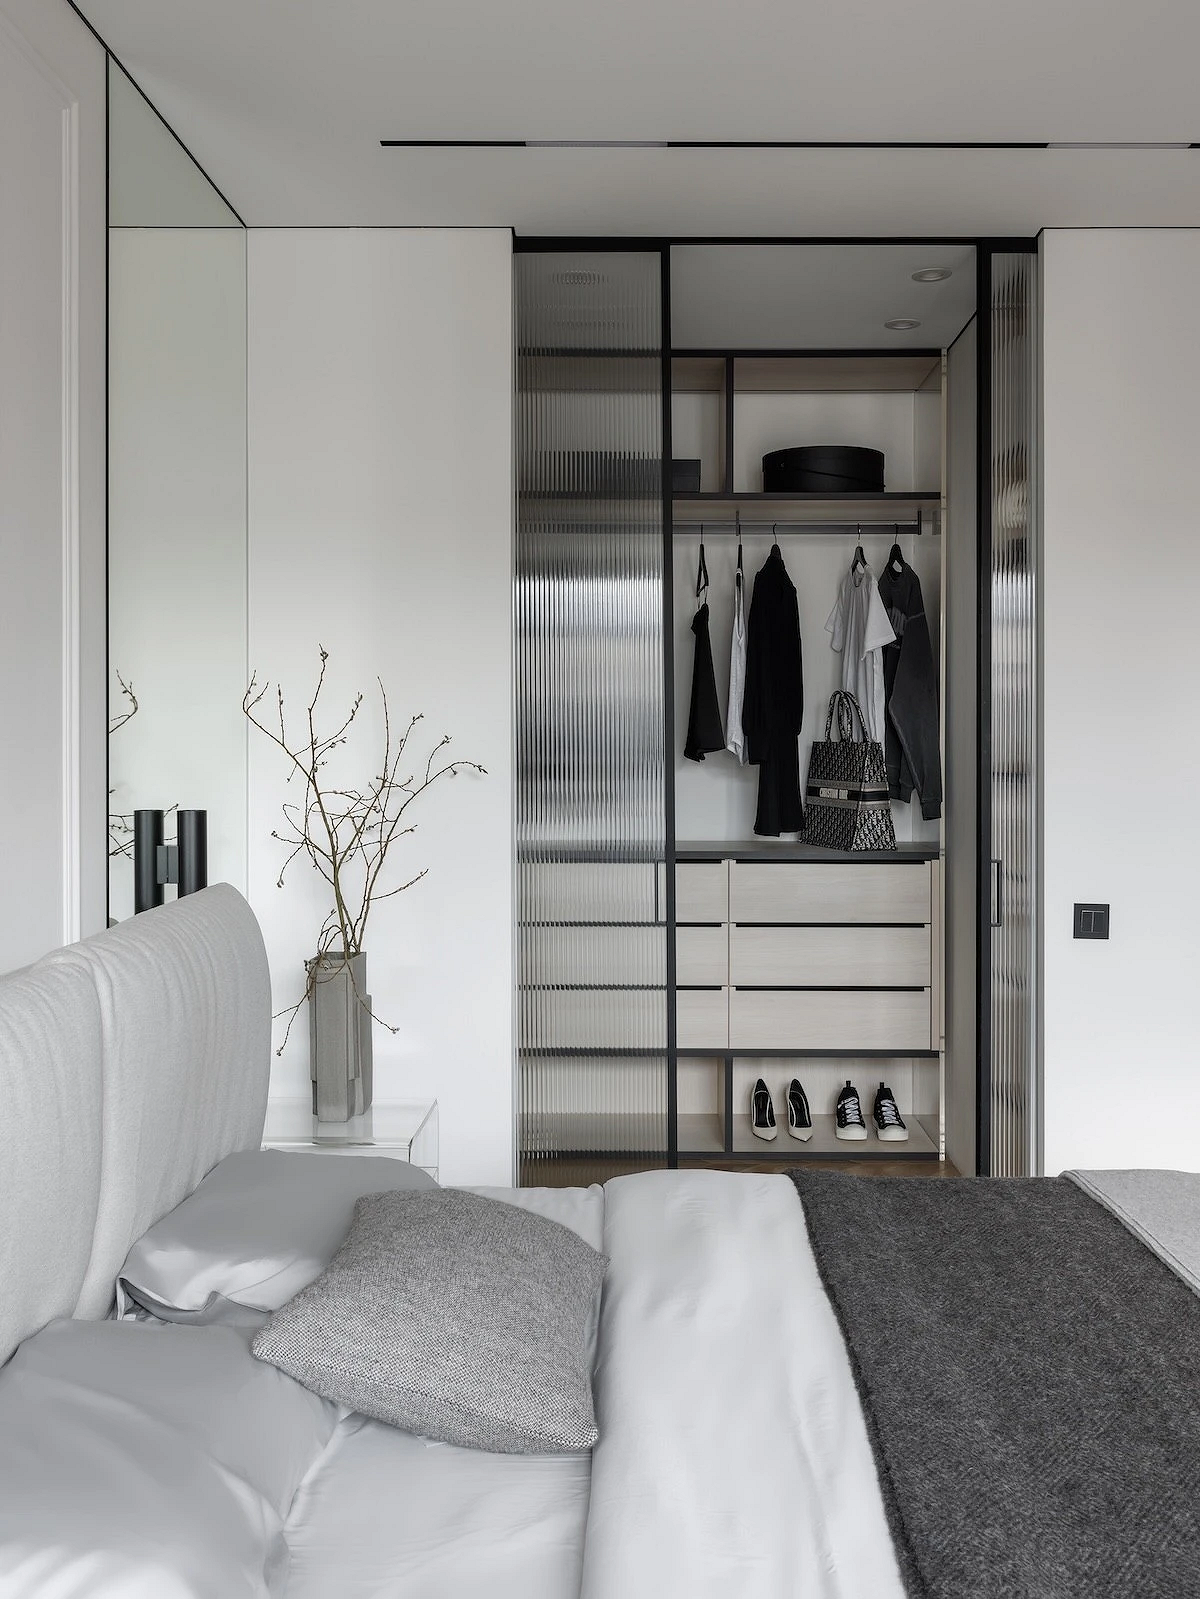 Как дизайнеры оформляют свои спальни? 6 красивых комнат из проектов профи13